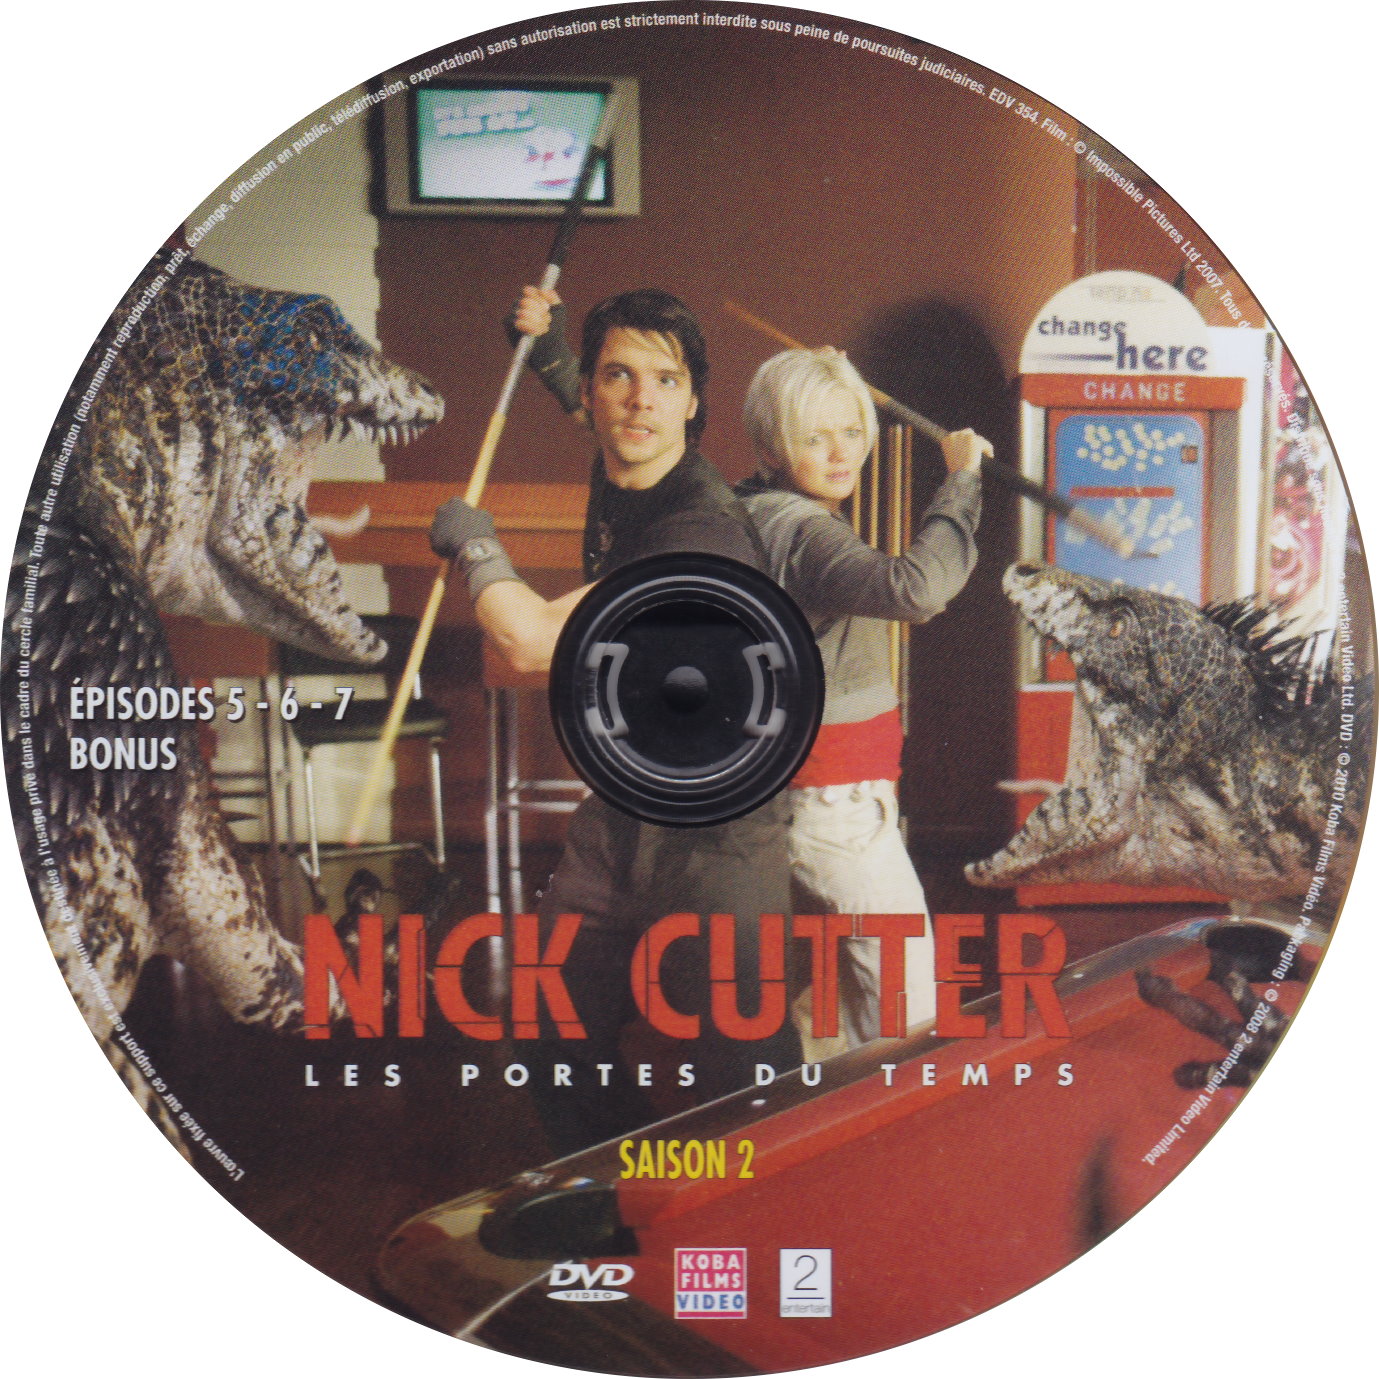 Nick Cutter Les portes du temps Saison 2 DISC 2